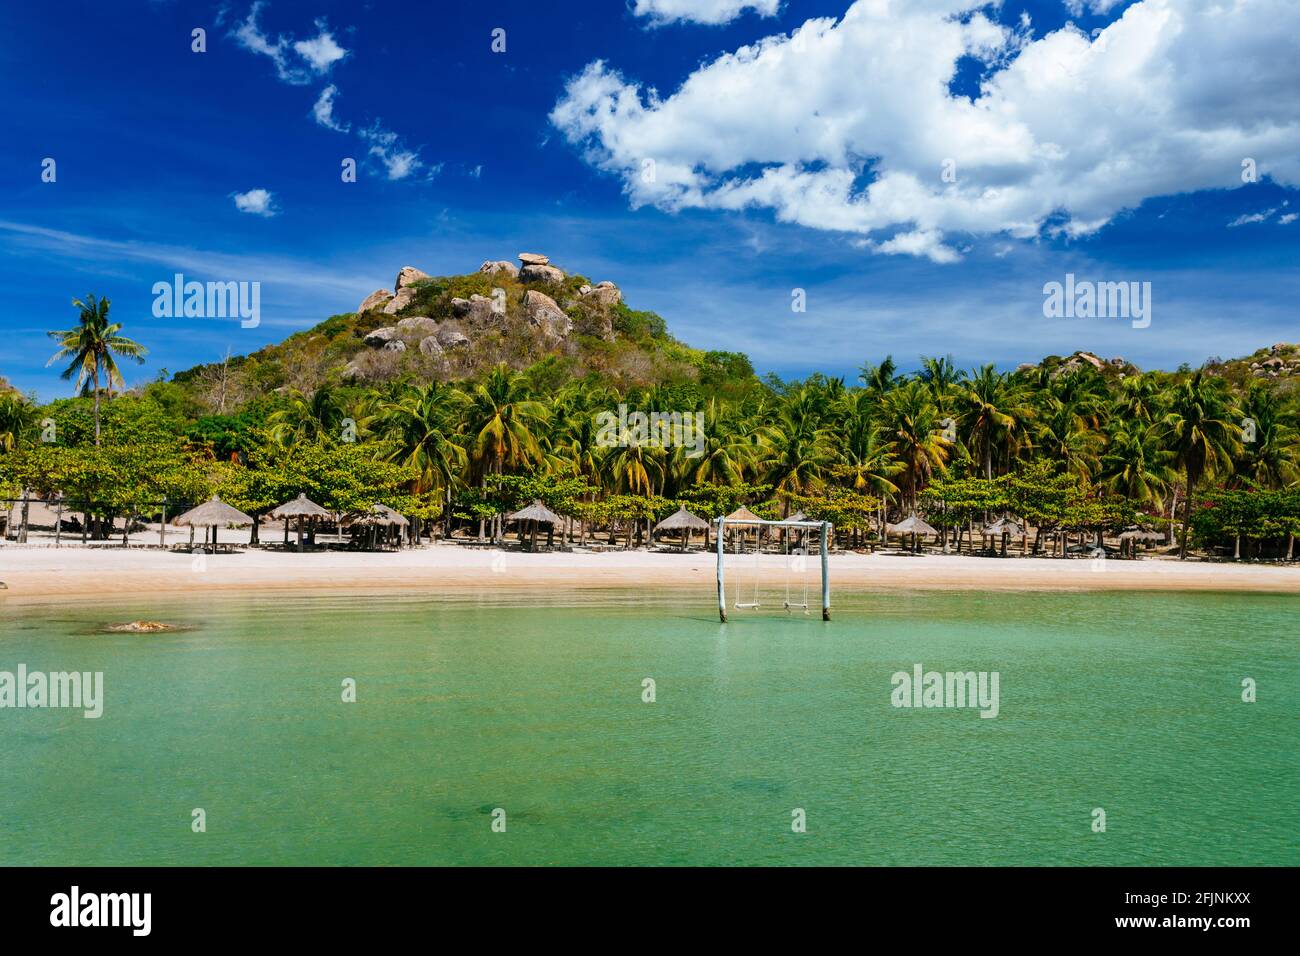 Concetto di vacanza tropicale. Una esotica spiaggia di sabbia vuota con un mare calmo e limpido, un'altalena in legno nel mare e con un bellissimo paesaggio nel backgrou Foto Stock